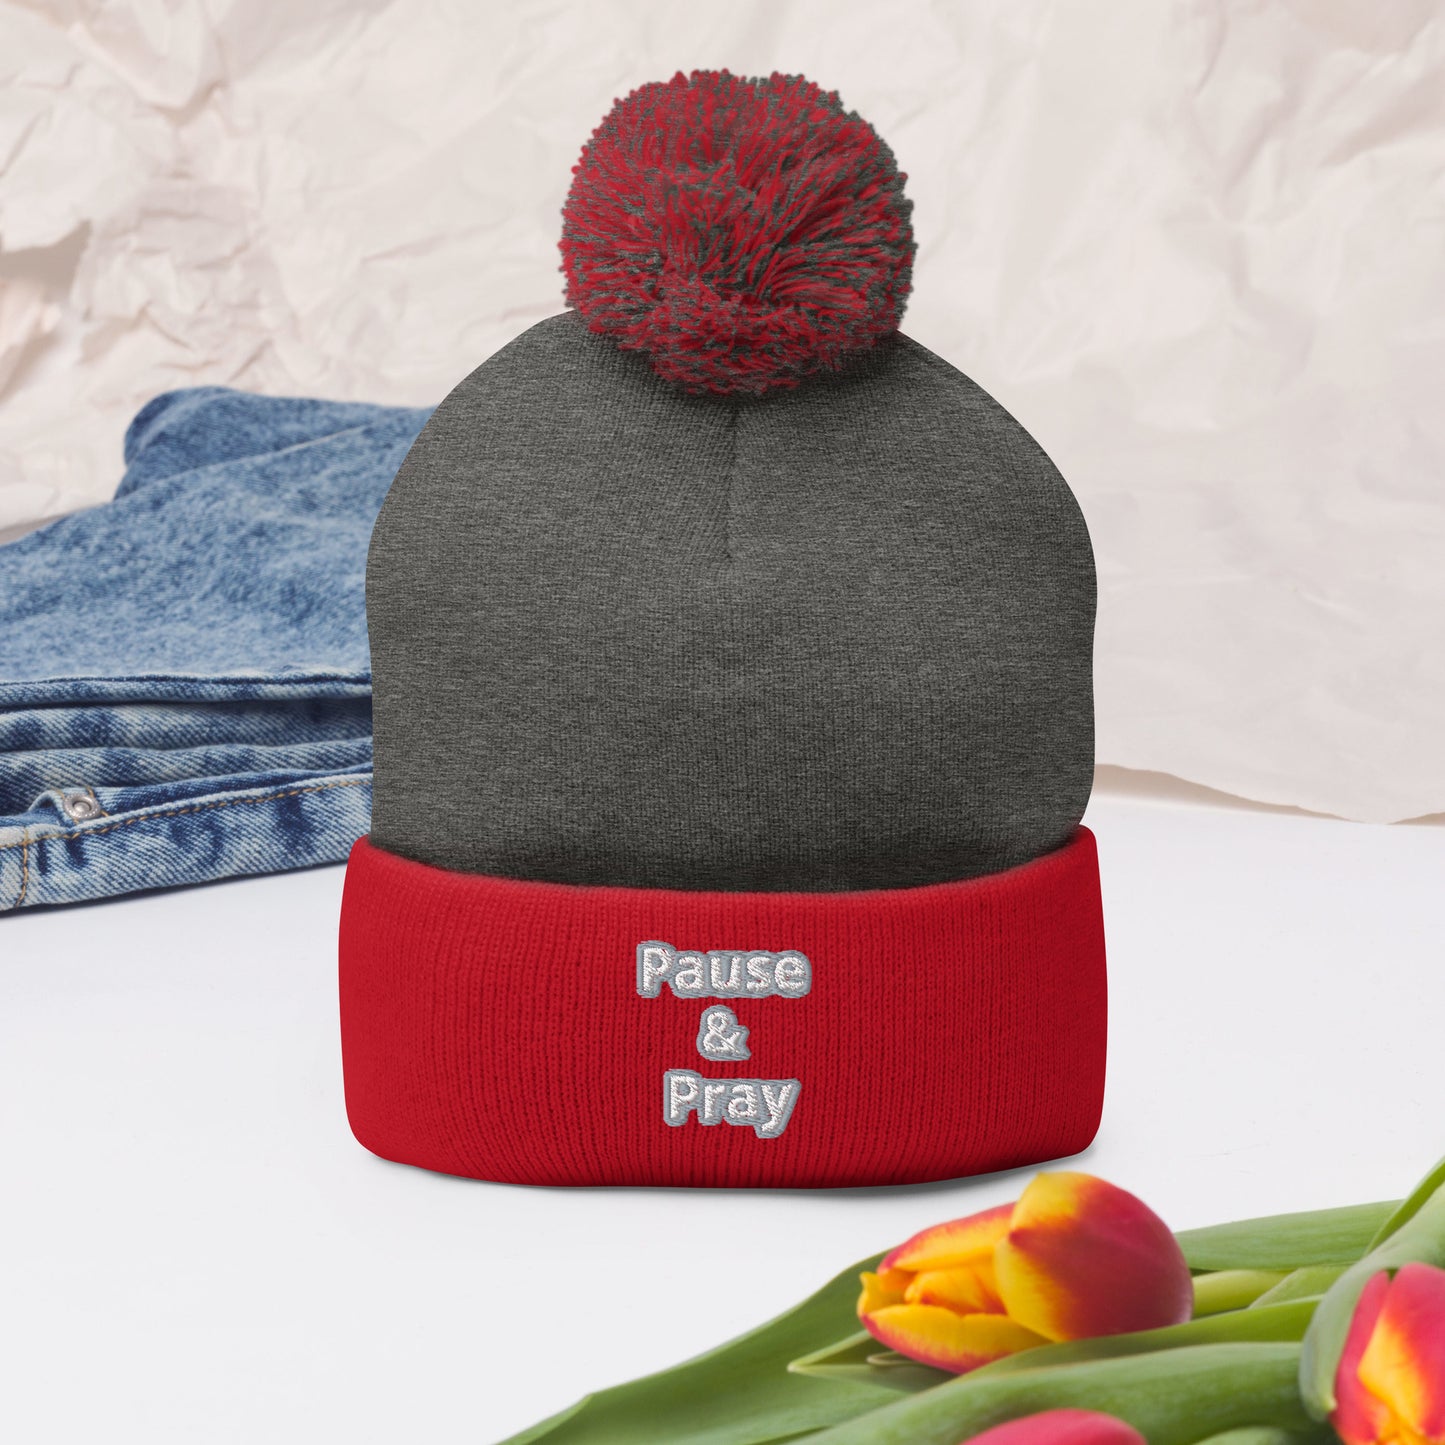 Pause & Pray Pom-Pom Beanie